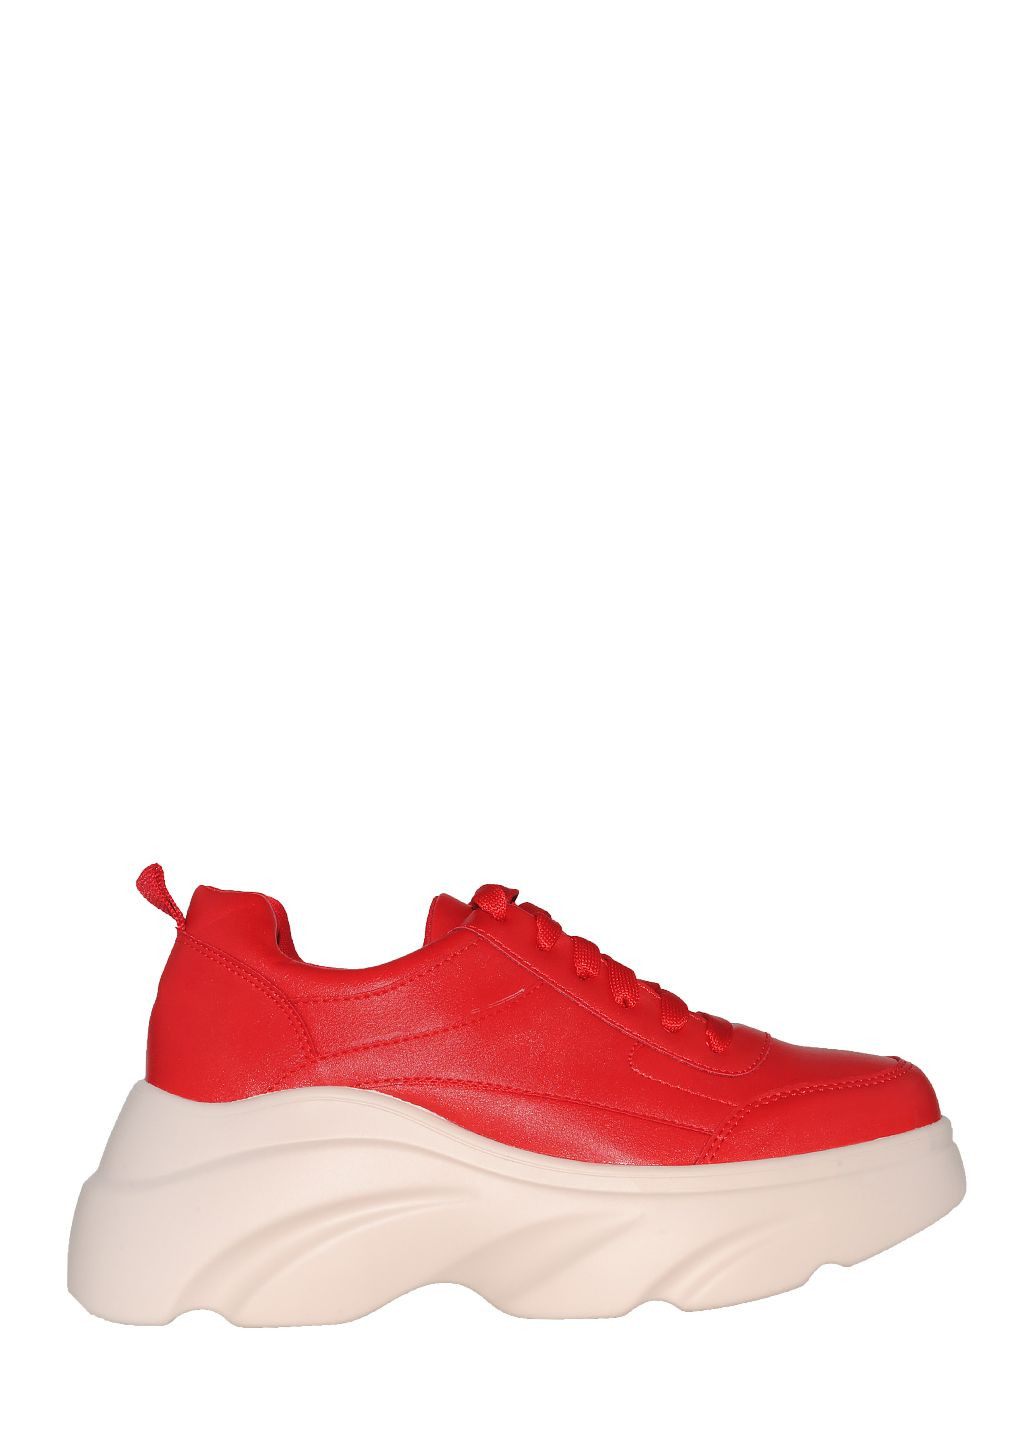 Красные демисезонные кроссовки 315-8 red Stilli